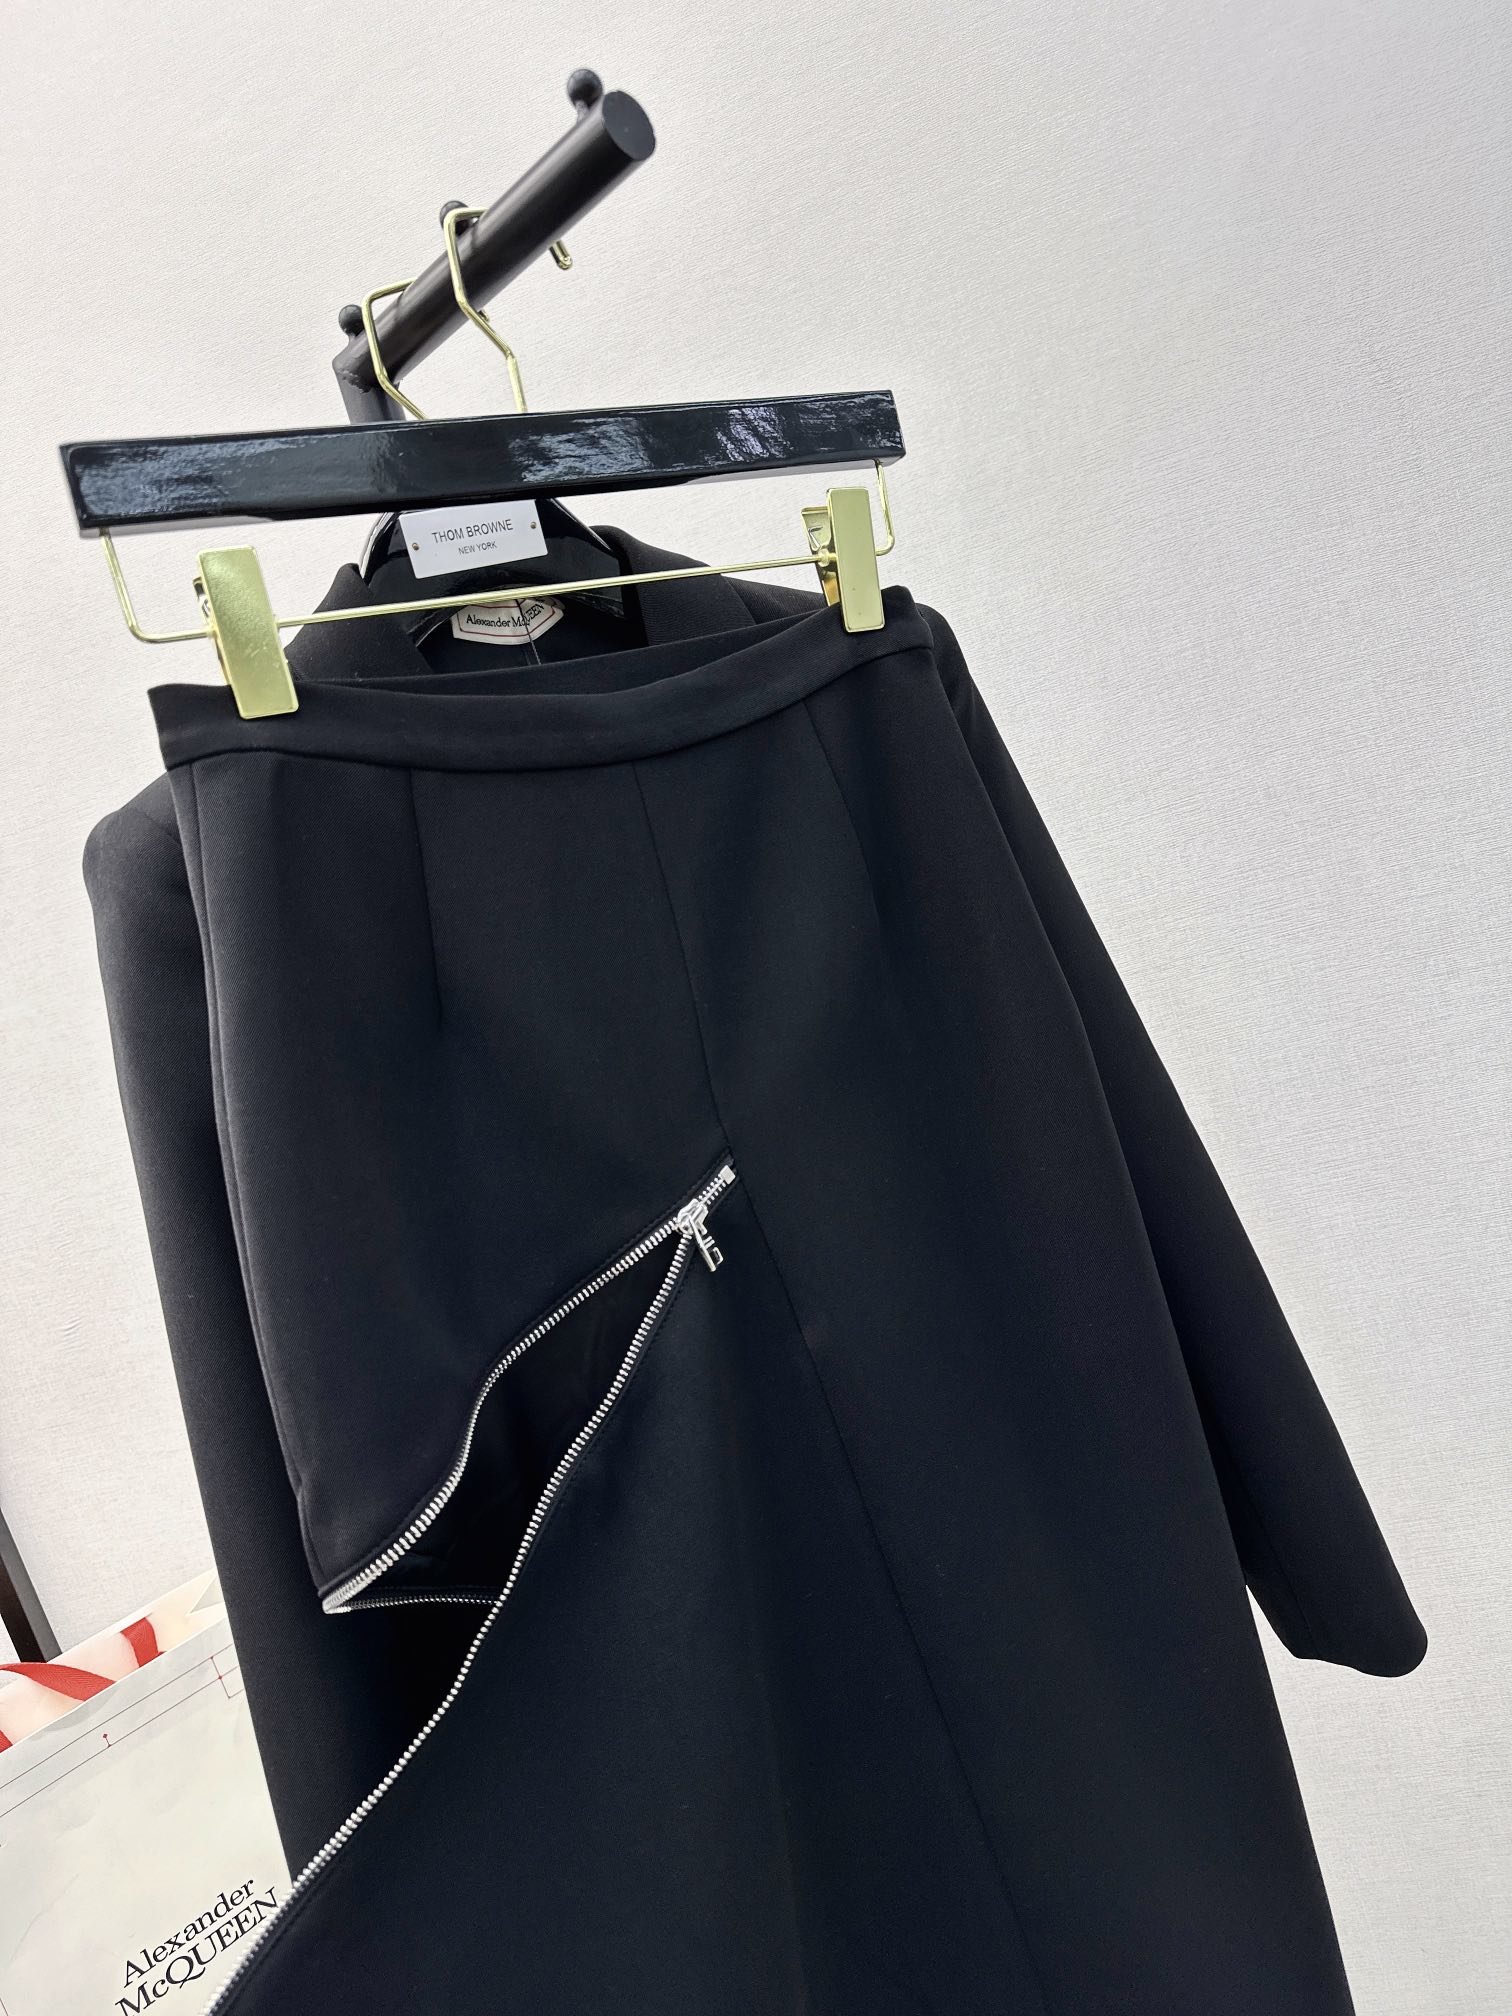 独家首发MCQ23Ss秋冬最新款高级黑拉链开叉包臀半身裙极简主义裙中拉链开合随意切换不规则裙摆设计上身美